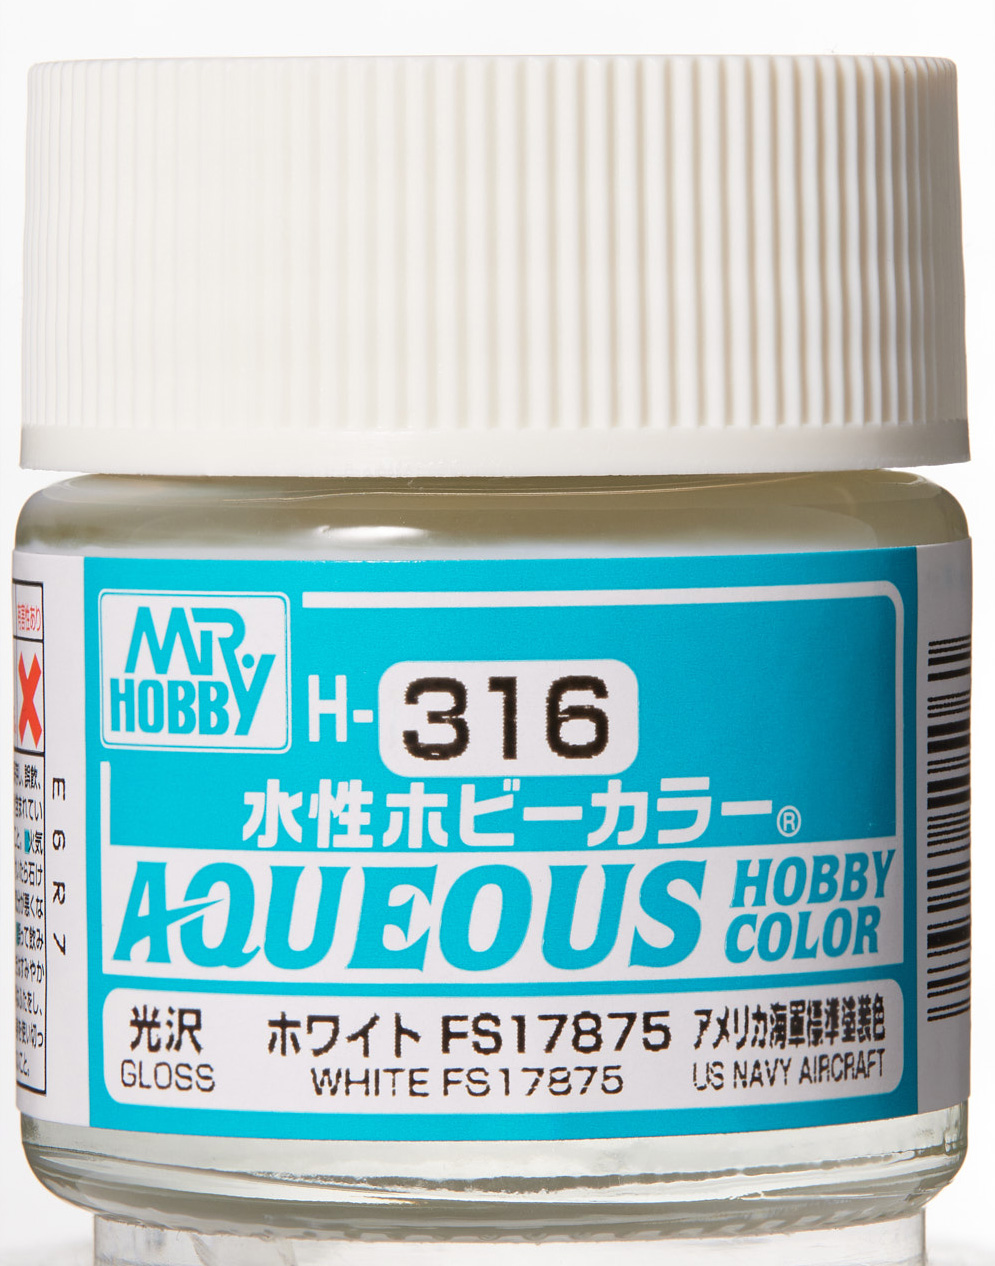 Mr. Aqueous Hobby Color - White FS17875 - H316 - Weiß FS17875